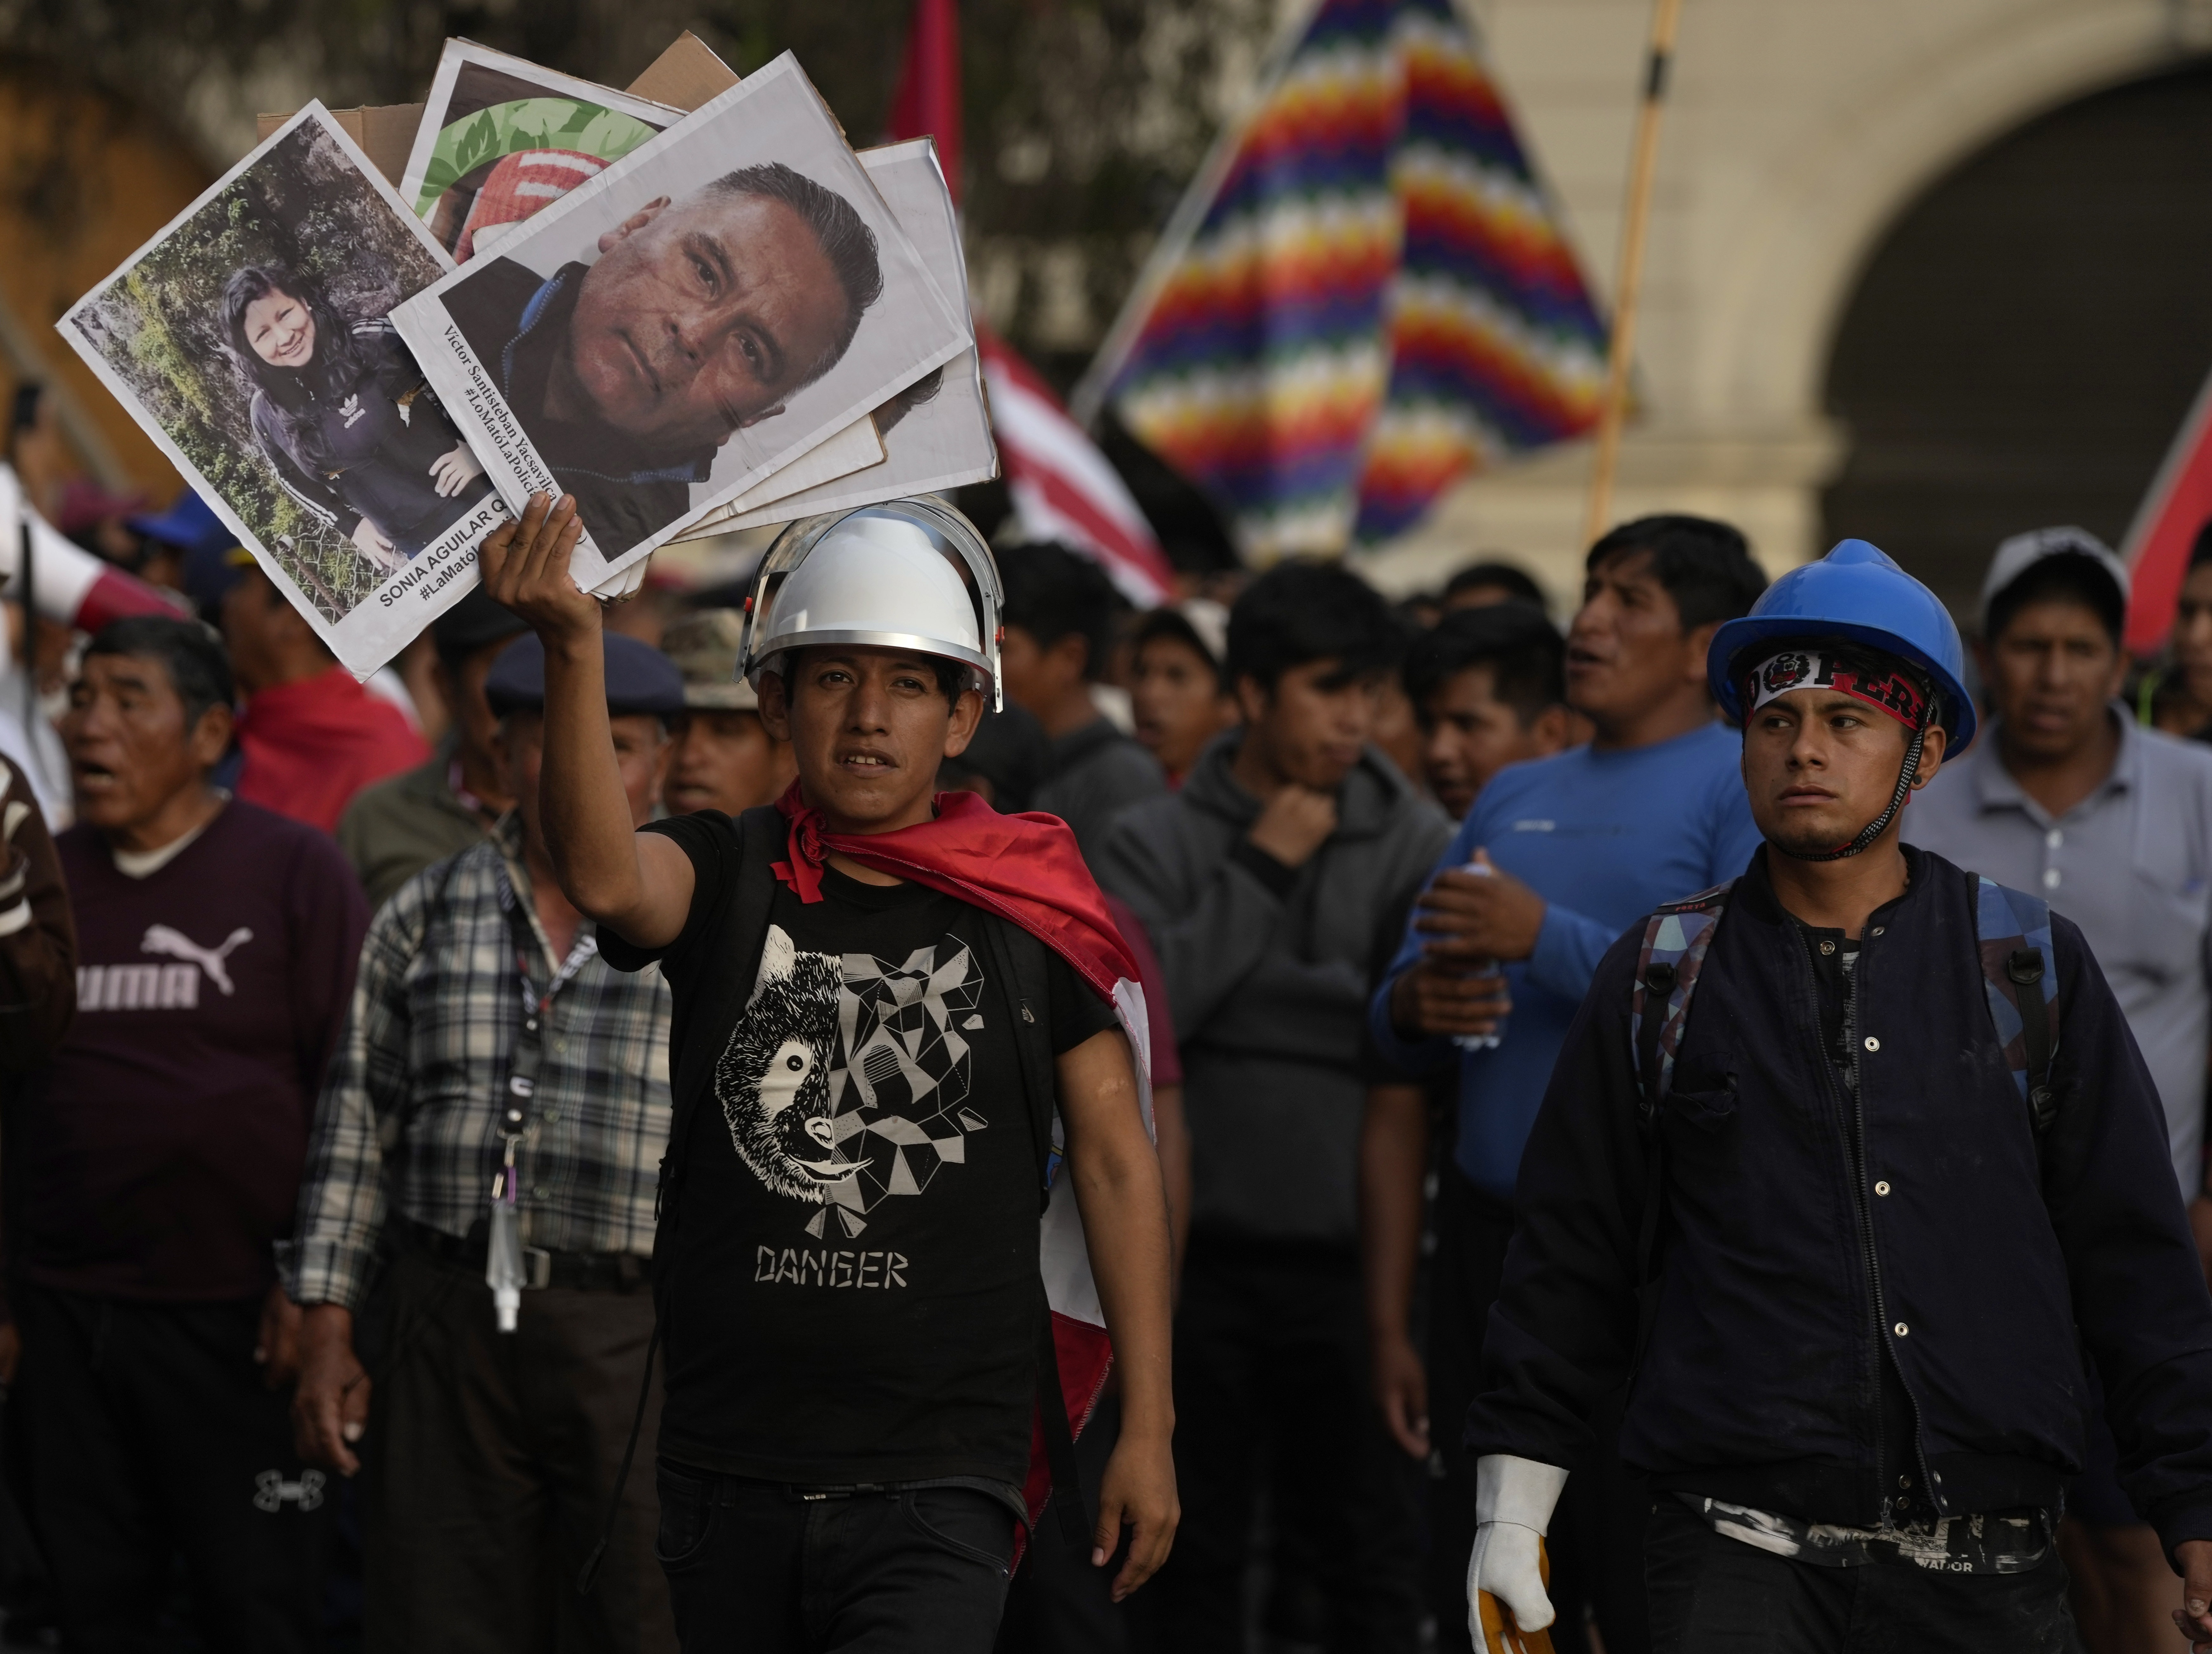 Con carteles con las fotos de las víctimas durante las protestas antigubernamentales, los manifestantes marchan contra la presidenta peruana Dina Boluarte en Lima, Perú. (AP/Martín Mejía)